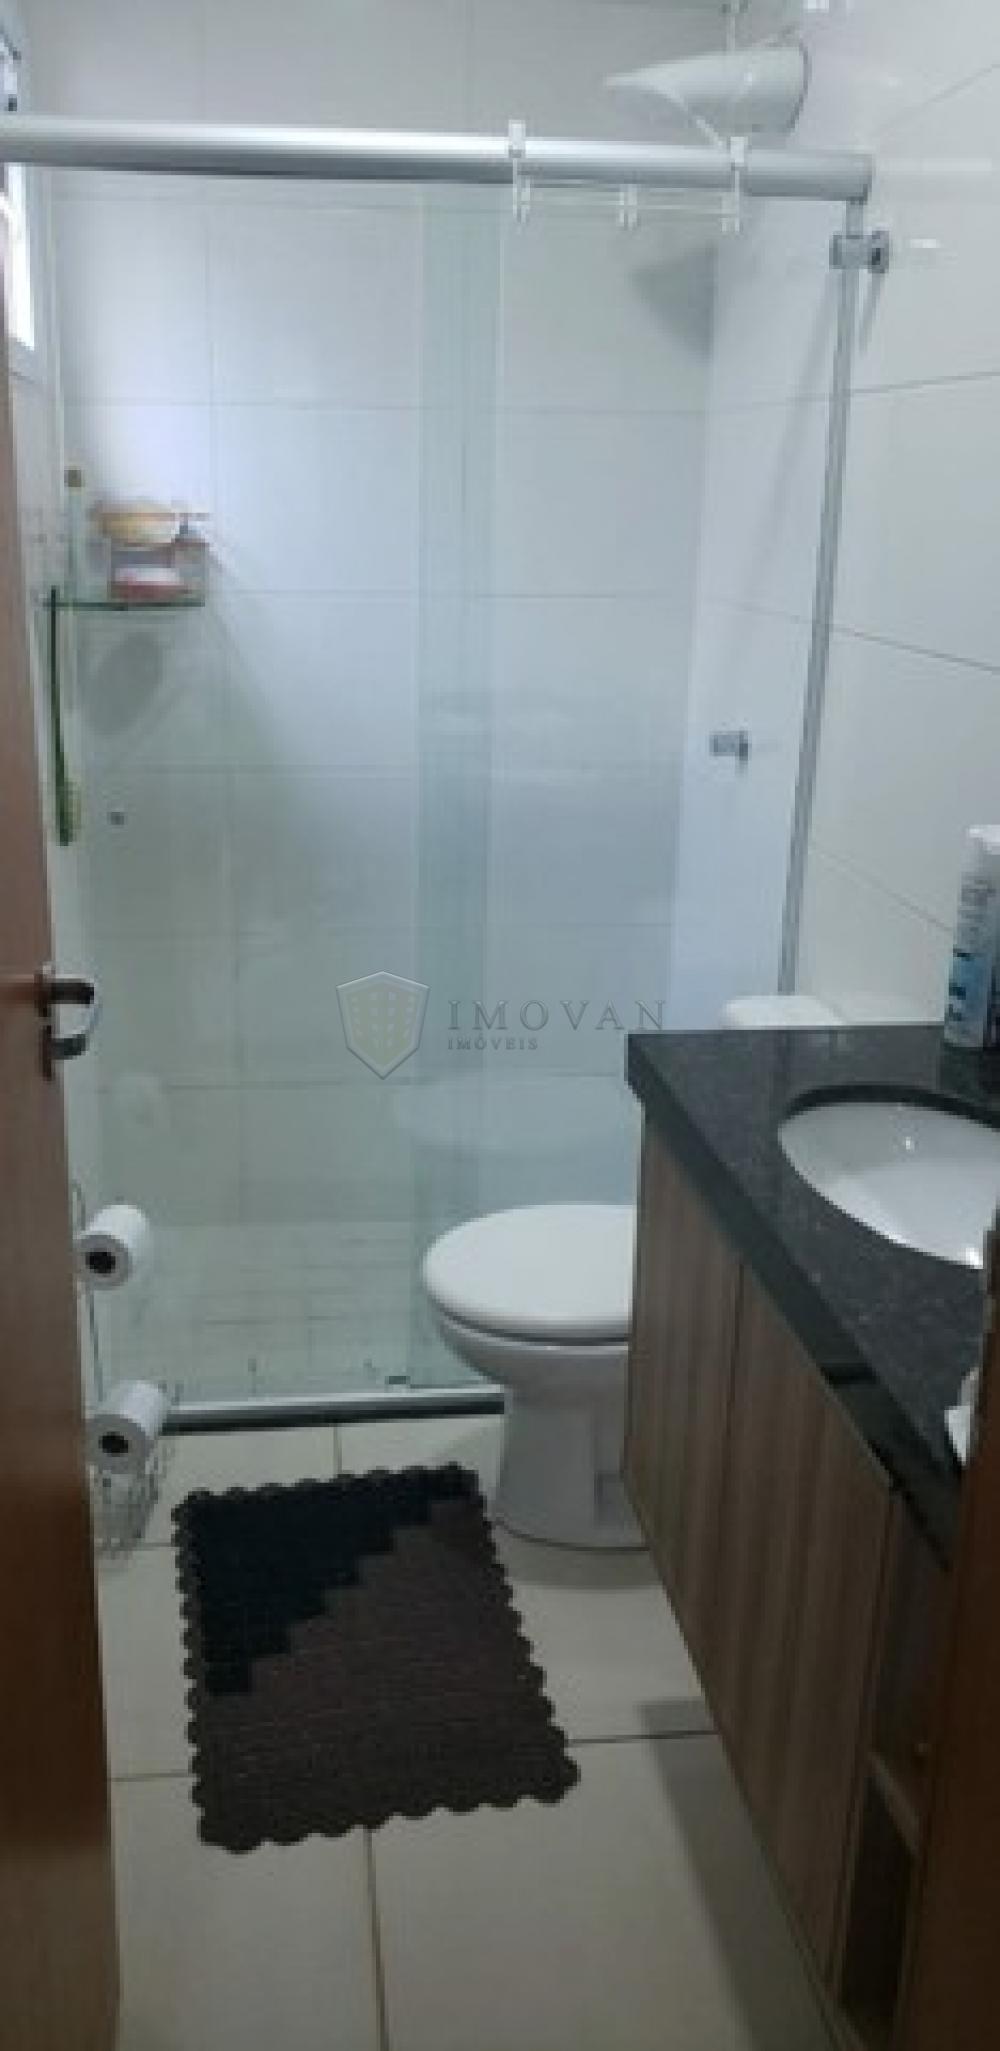 Comprar Apartamento / Padrão em Ribeirão Preto R$ 210.000,00 - Foto 4